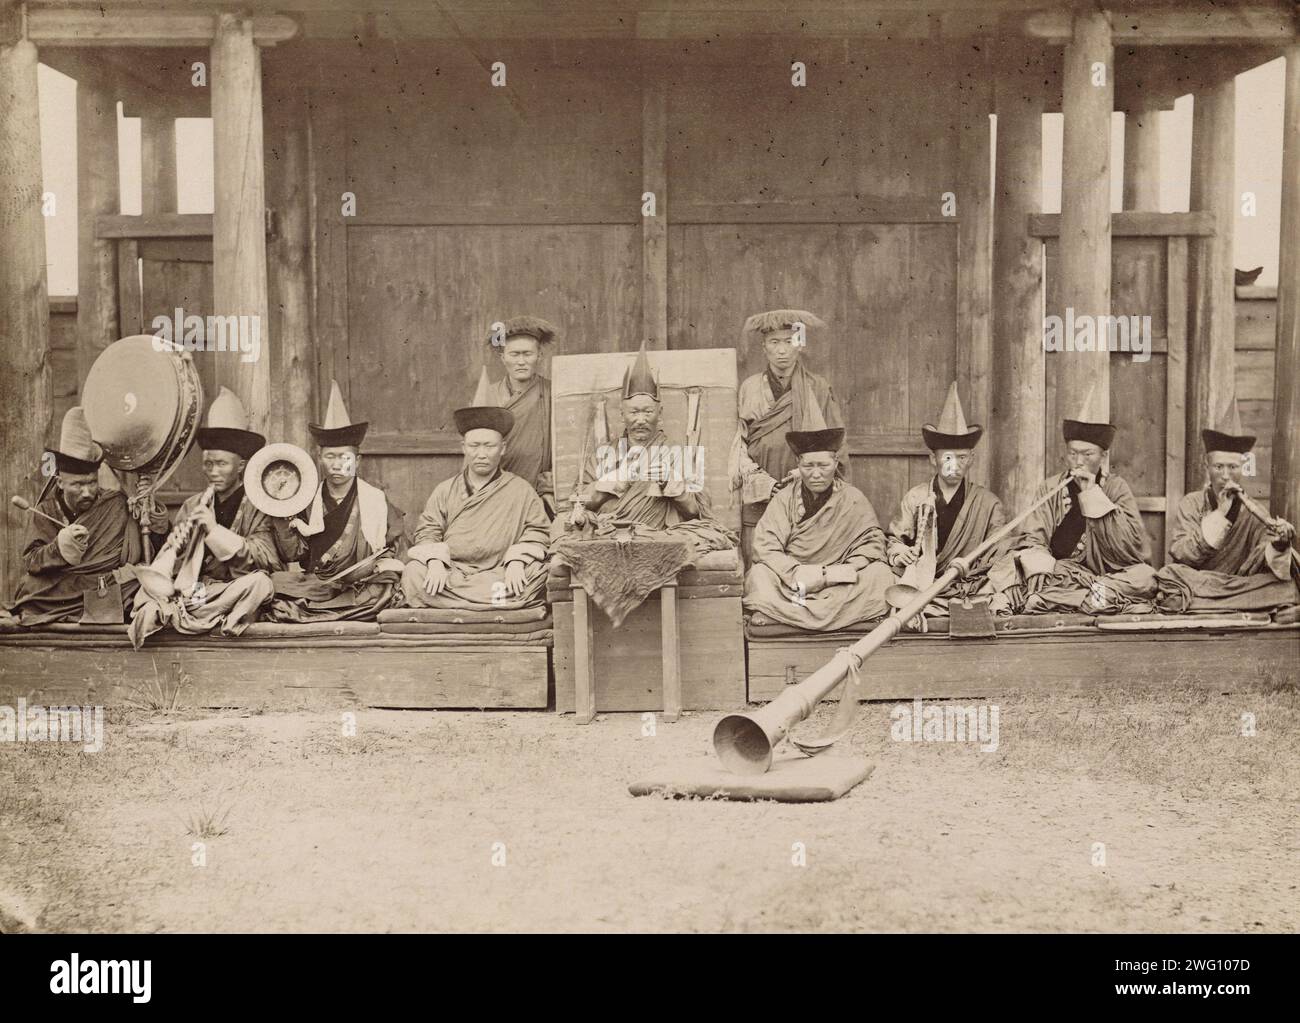 Gusinoozersk Datsan Khamba Lama (abbé (1)), lamas et musiciens lamas. Pendant le service, Khamba Lama tient un honkho dans ses mains, c'est-à-dire une cloche et un vachir (2), et les secoue au moment où les sorts sont lus. (1) en 1886 Dan était le lama Khamba., 1880-1889. Extrait d'un album de photographies et d'estampes montrant les points forts de la ville d'Irkoutsk et de ses environs à la fin du 19e siècle. Irkoutsk était à cette époque le centre de la vie culturelle et intellectuelle sibérienne. Les bâtiments montrés comprennent le Musée des études régionales, une école technique, un orphelinat, des hôtels et l'église o Banque D'Images